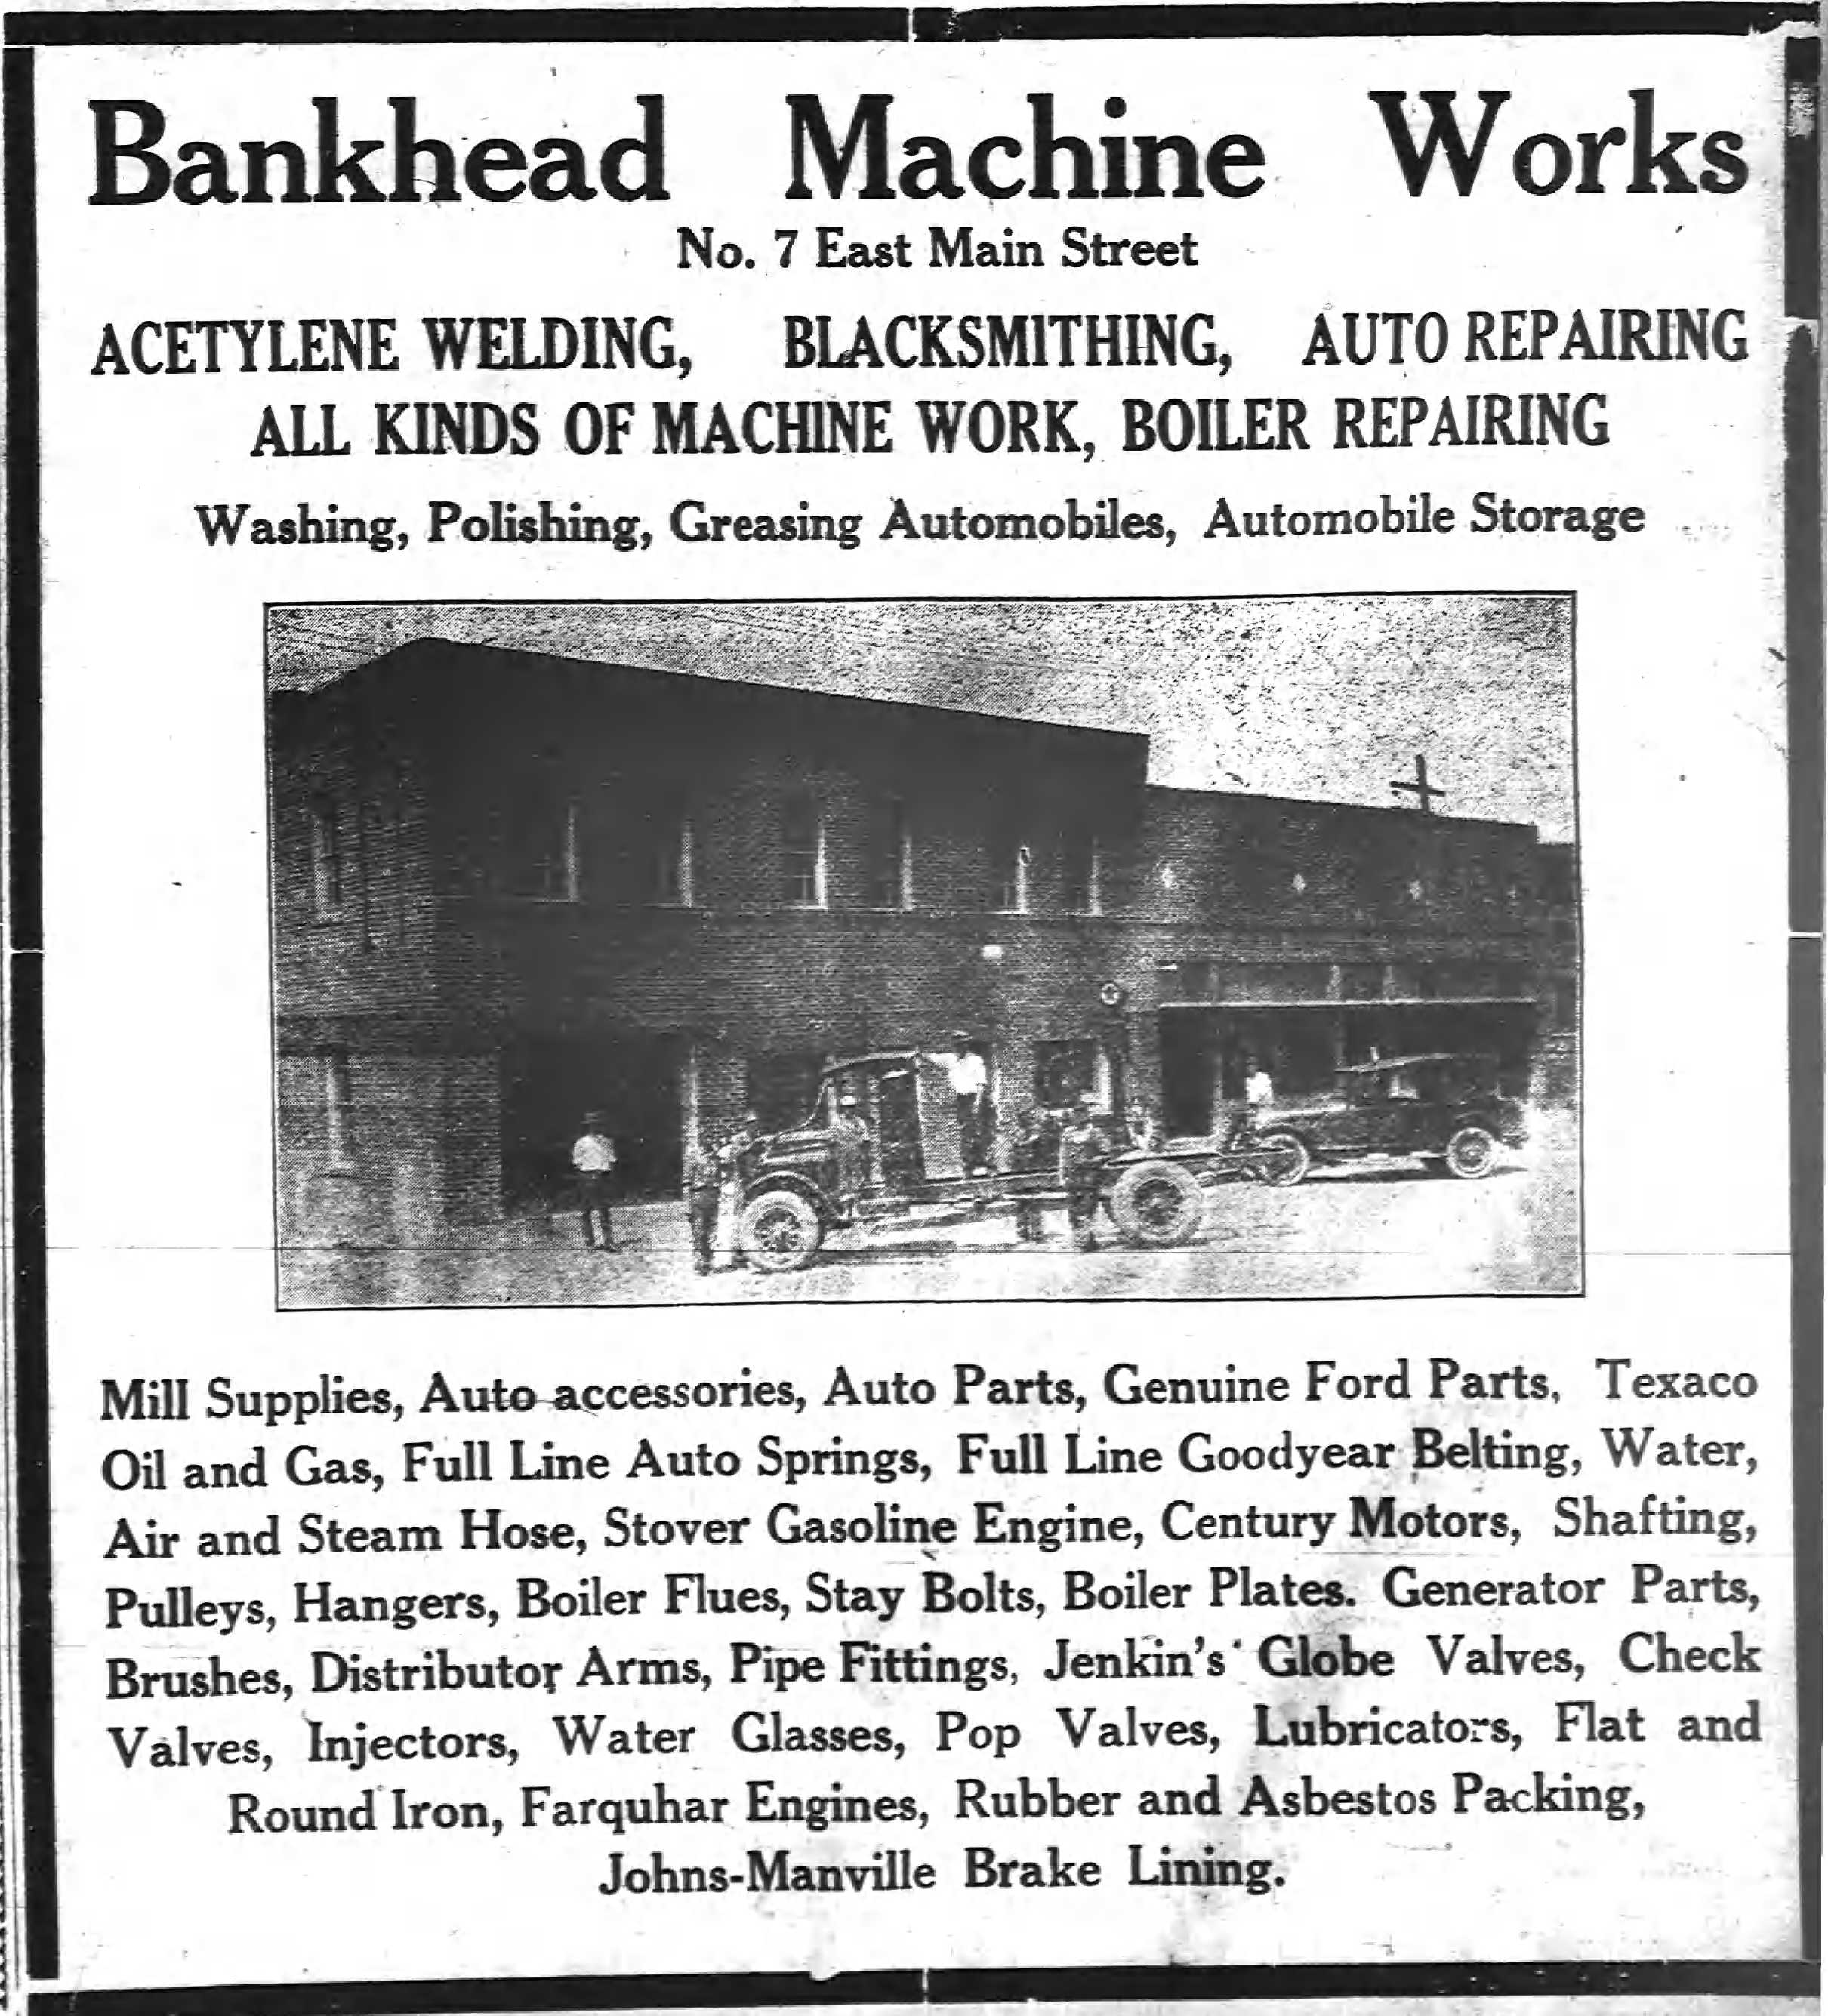 1924 Bankhead Machine Works.jpg